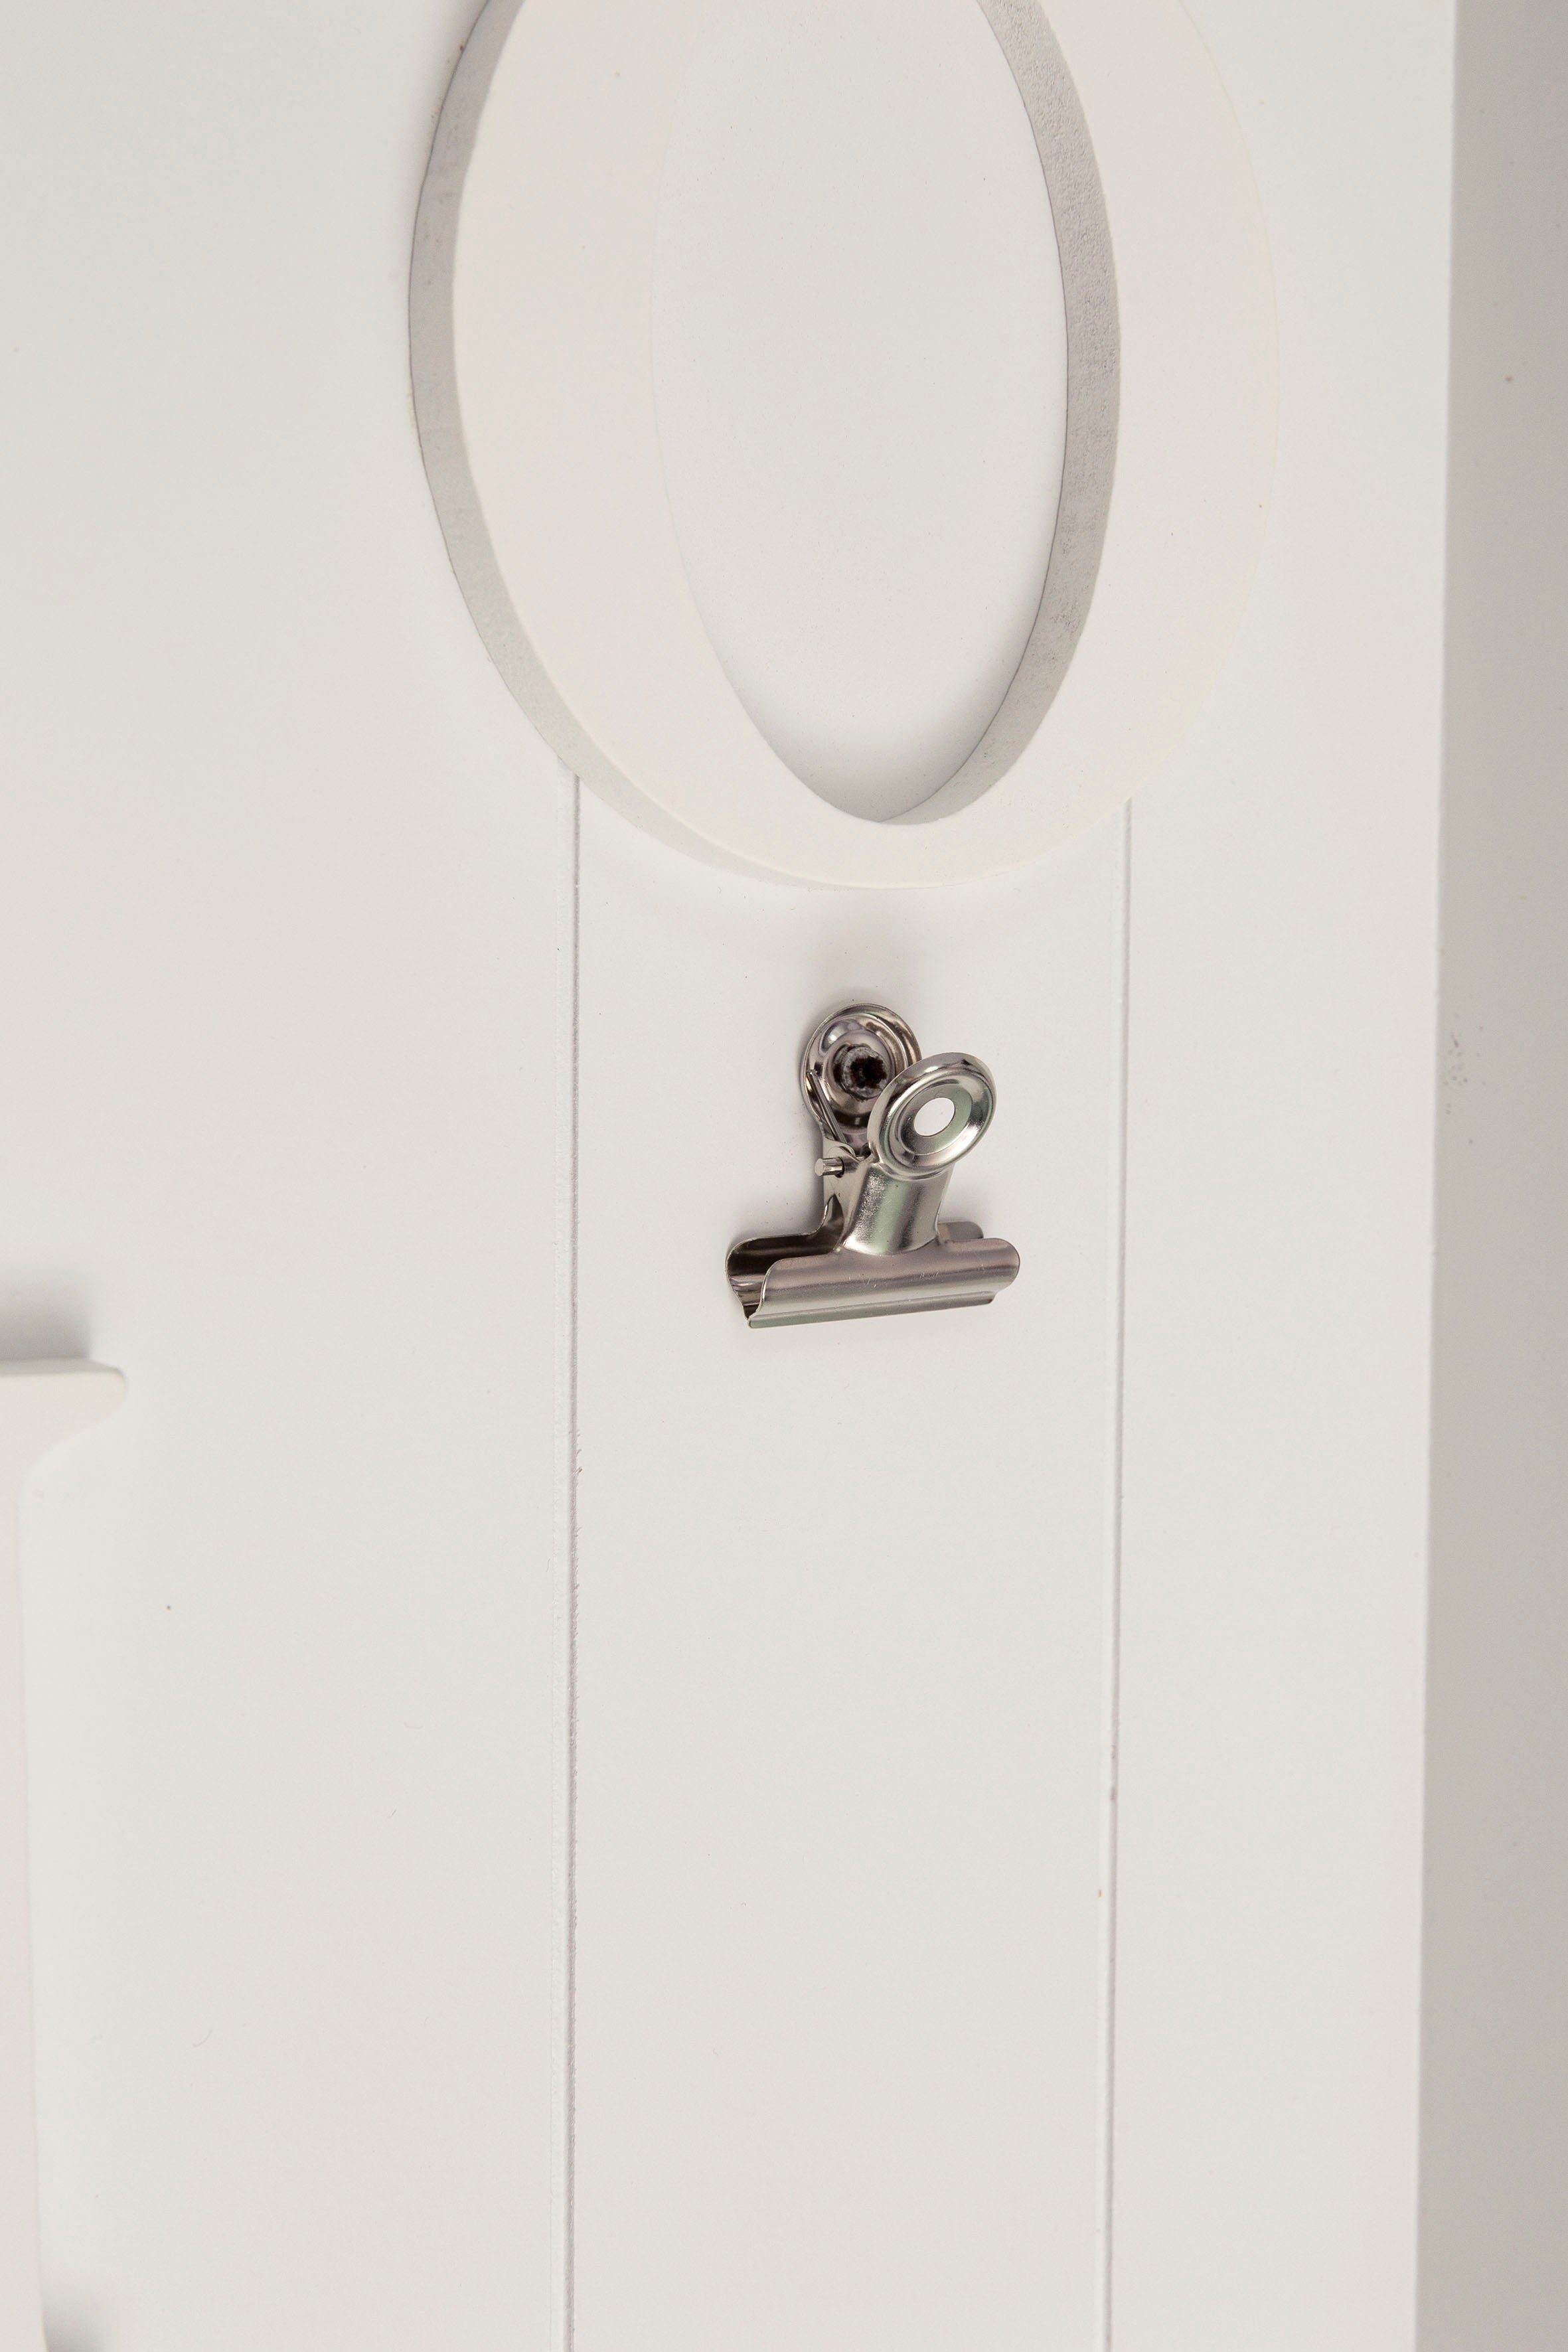 Myflair Möbel & Accessoires Memoboard & weiß, Schriftzug Klemmen Schlüsselbrett, Haken, mit Valerina, mit